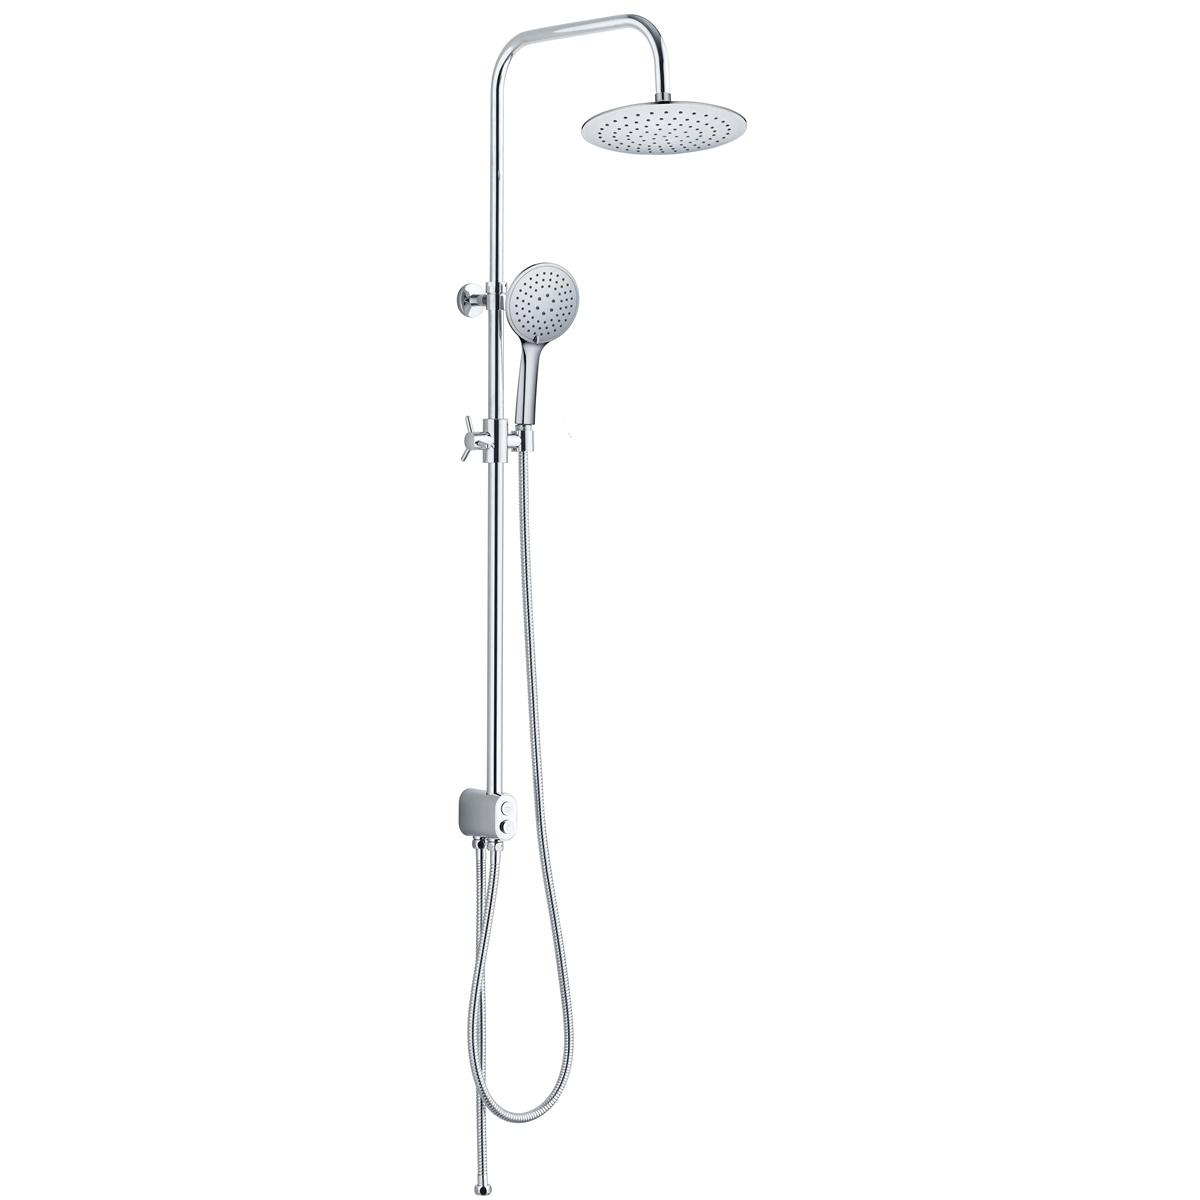 YS34110 Cột sen tắm, cột tắm mưa có nút bấm chuyển hướng, có thể điều chỉnh độ cao;